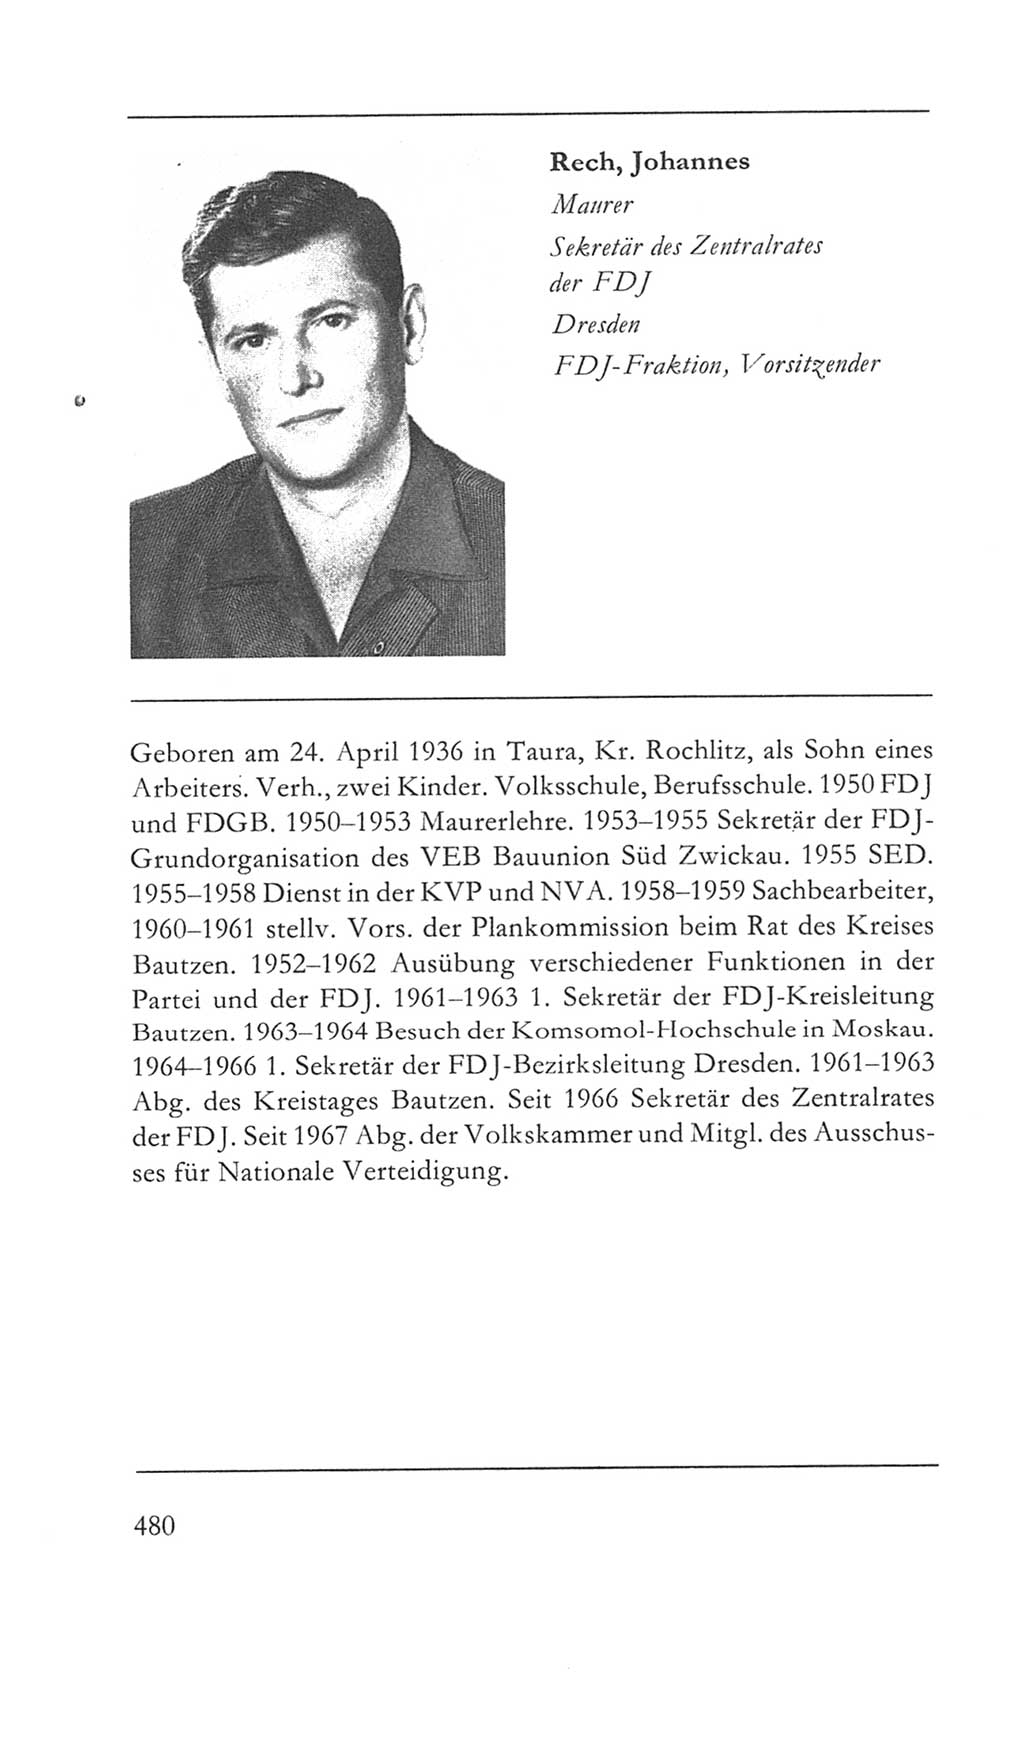 Volkskammer (VK) der Deutschen Demokratischen Republik (DDR) 5. Wahlperiode 1967-1971, Seite 480 (VK. DDR 5. WP. 1967-1971, S. 480)